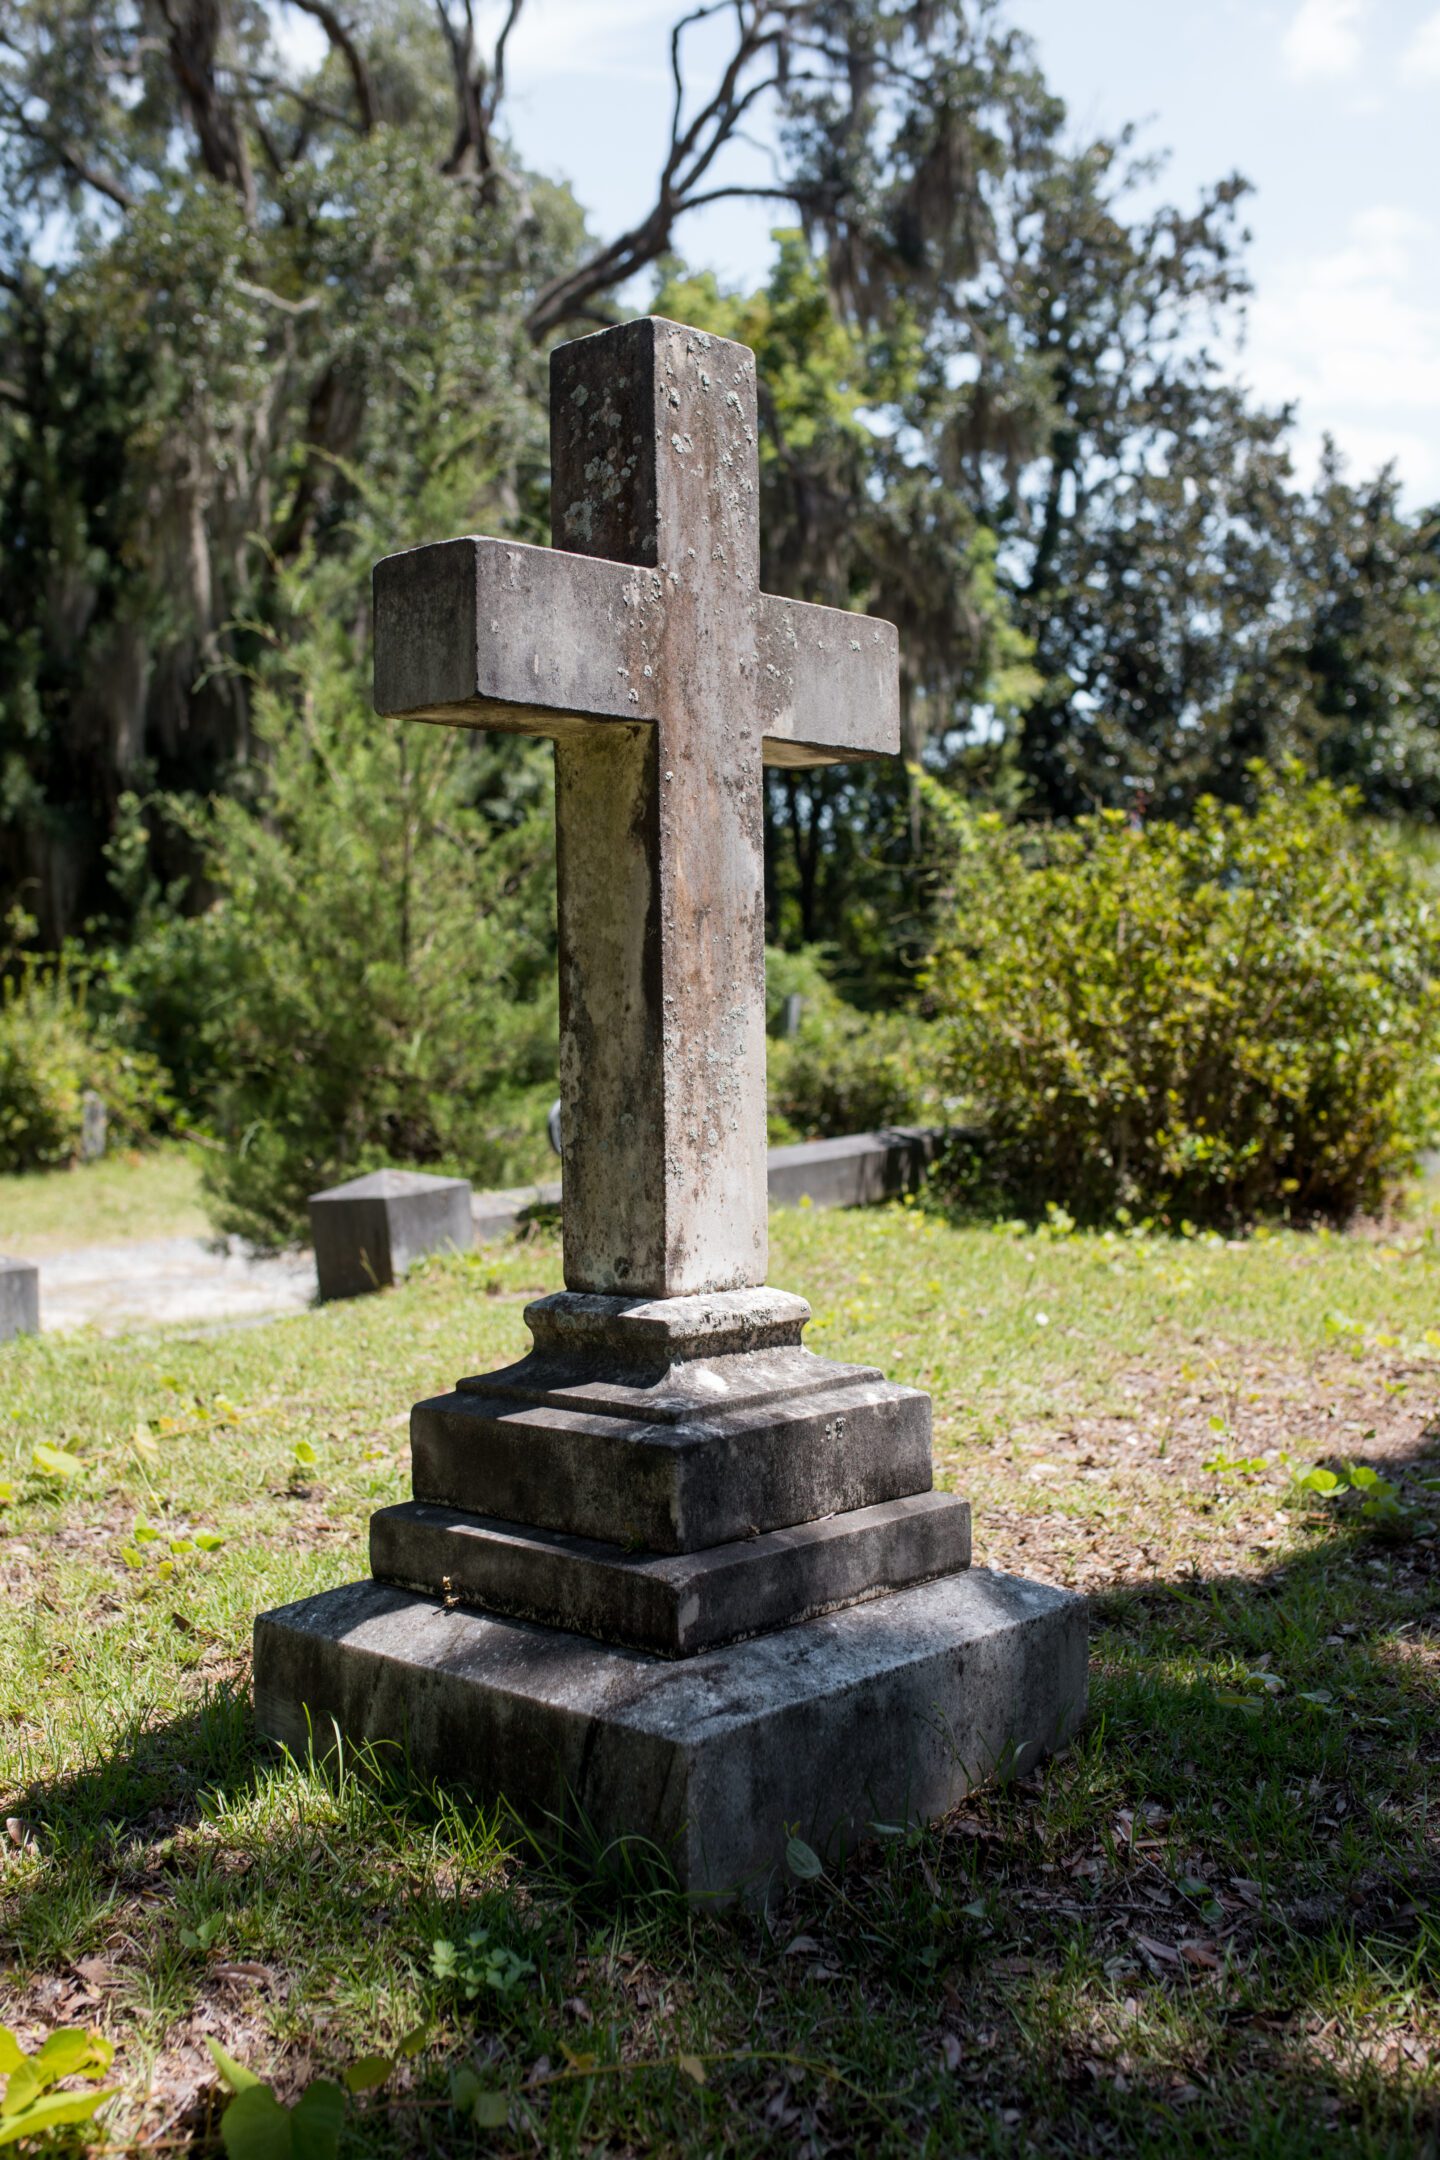 A gravestone head, day trip to savannah georgia